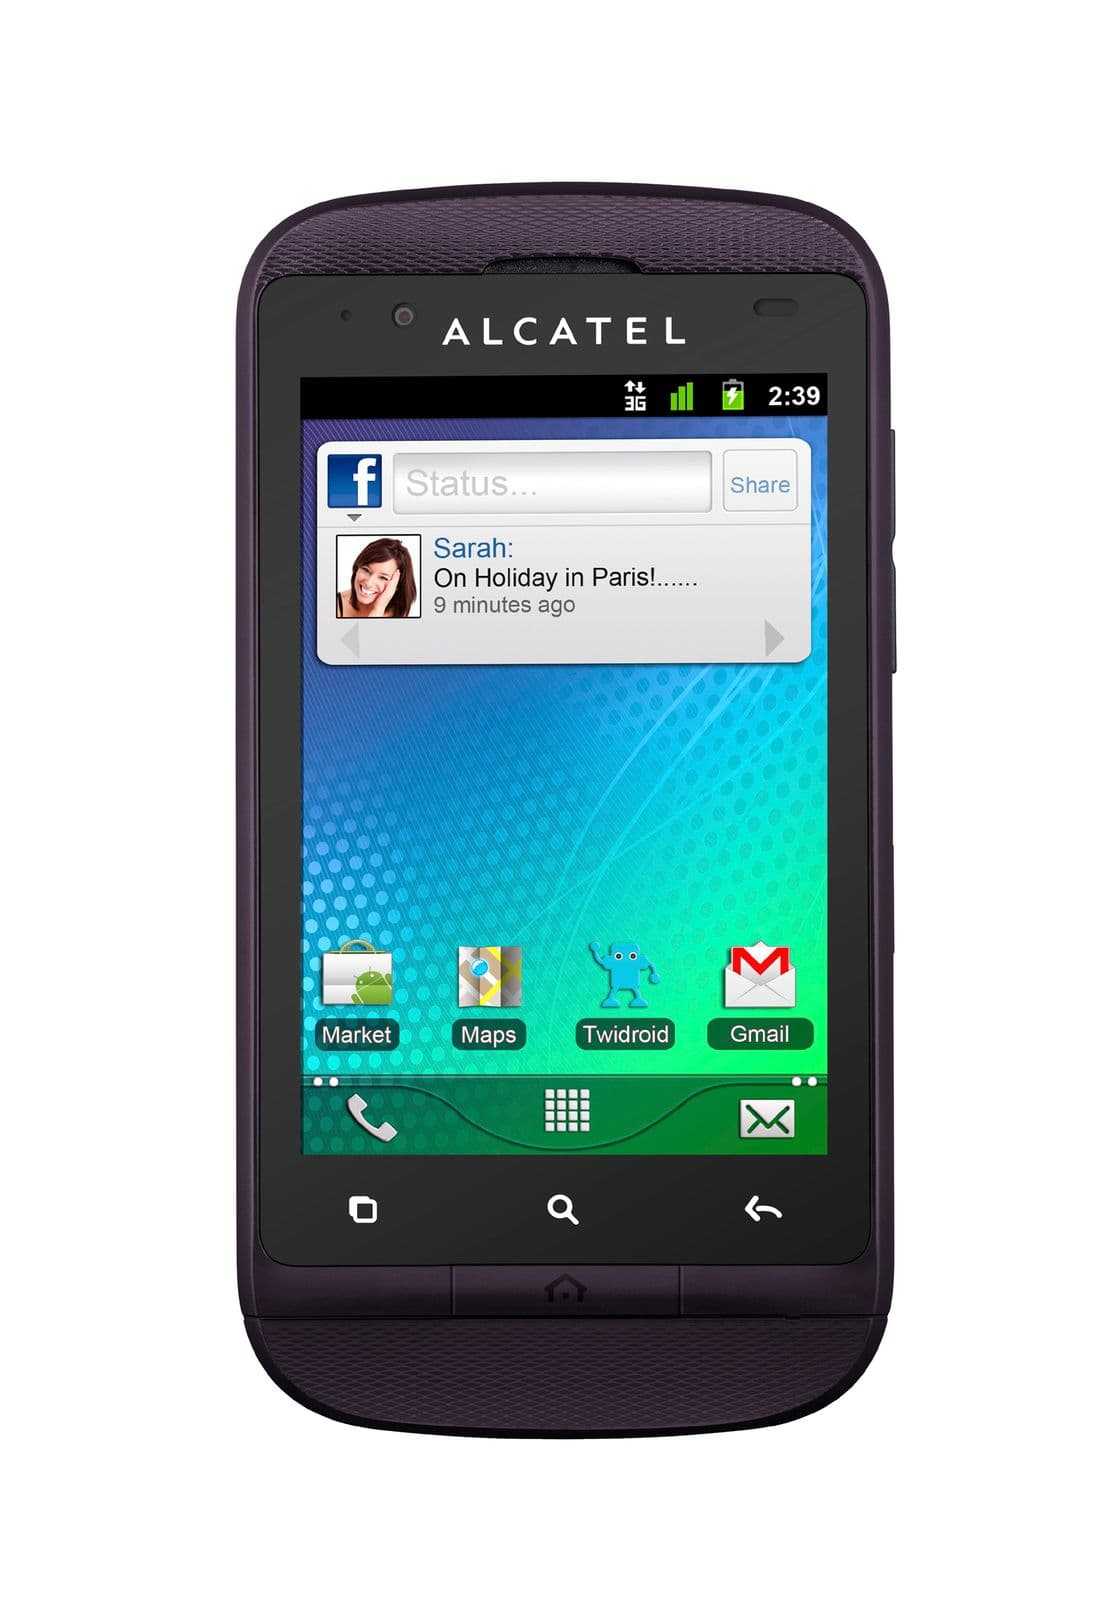 Alcatel ot 156 - описание телефона